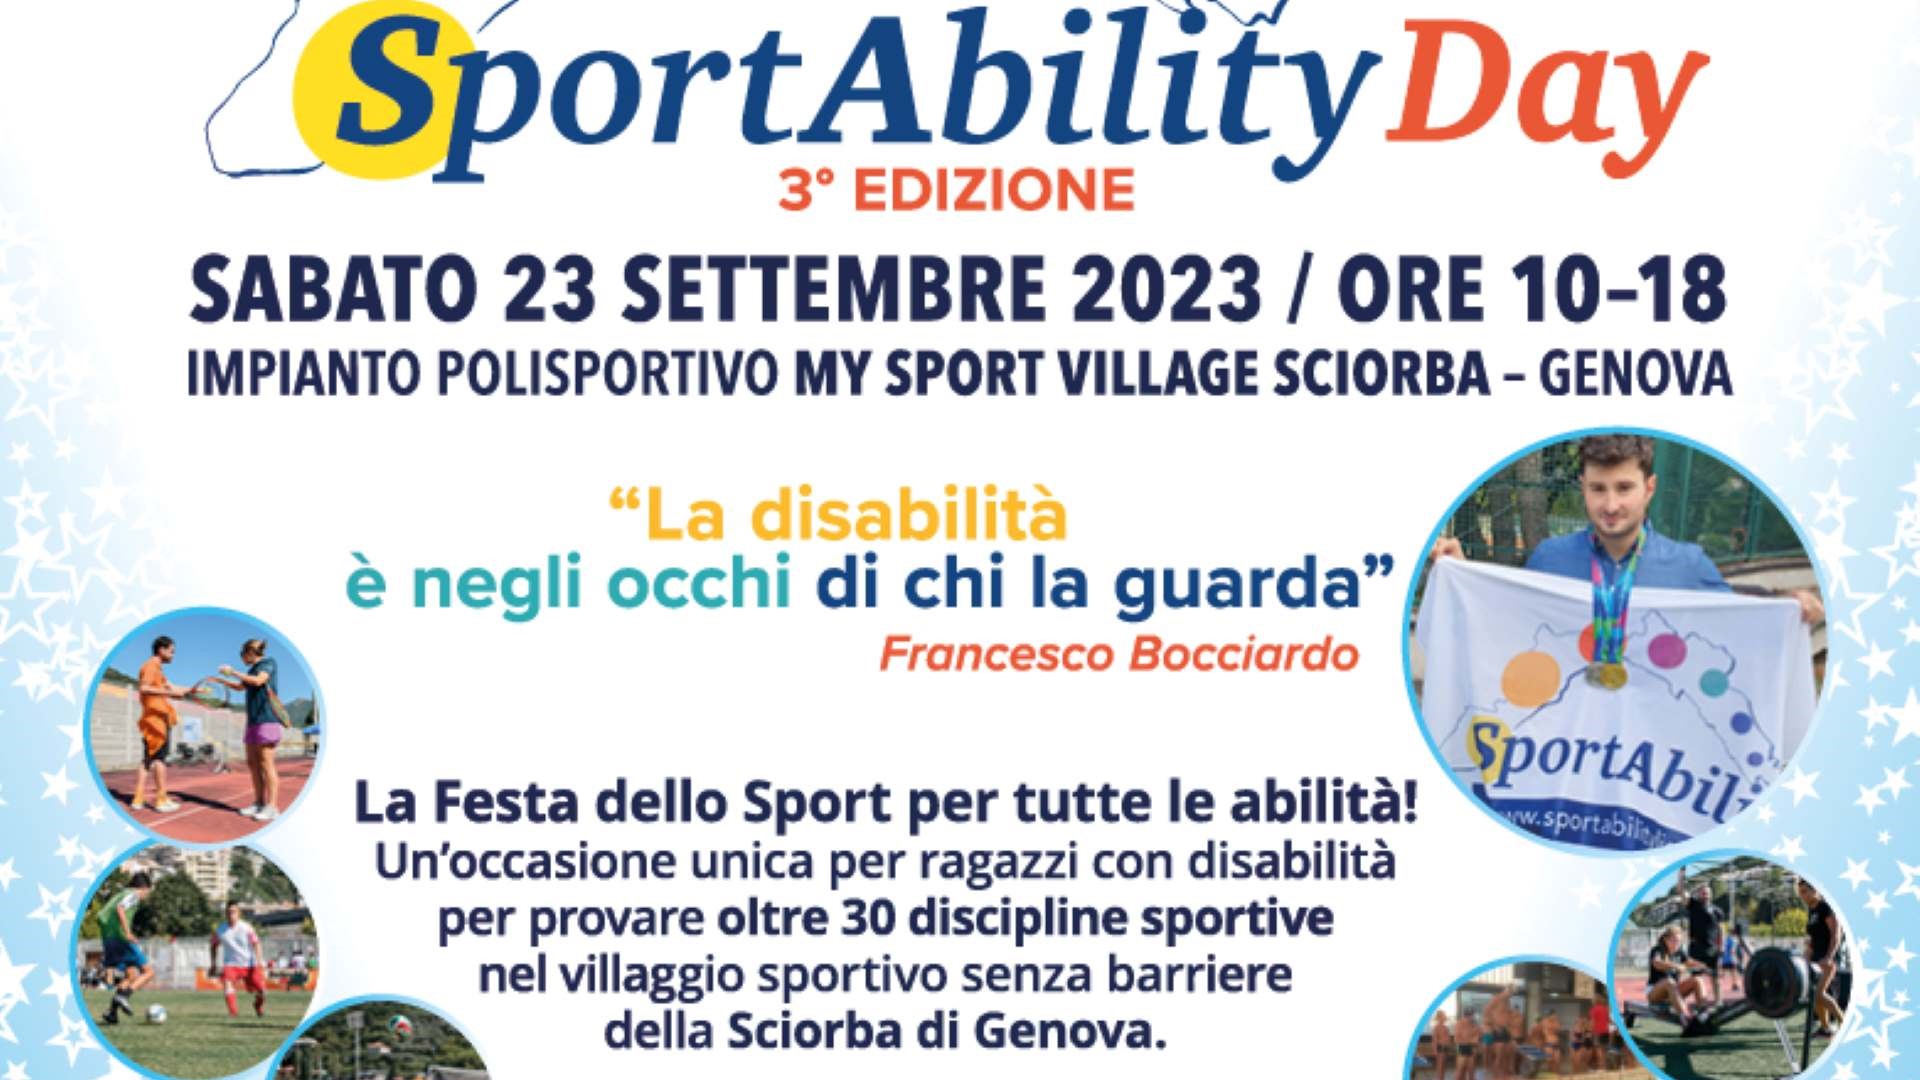 SportAbility Day alla Sciorba